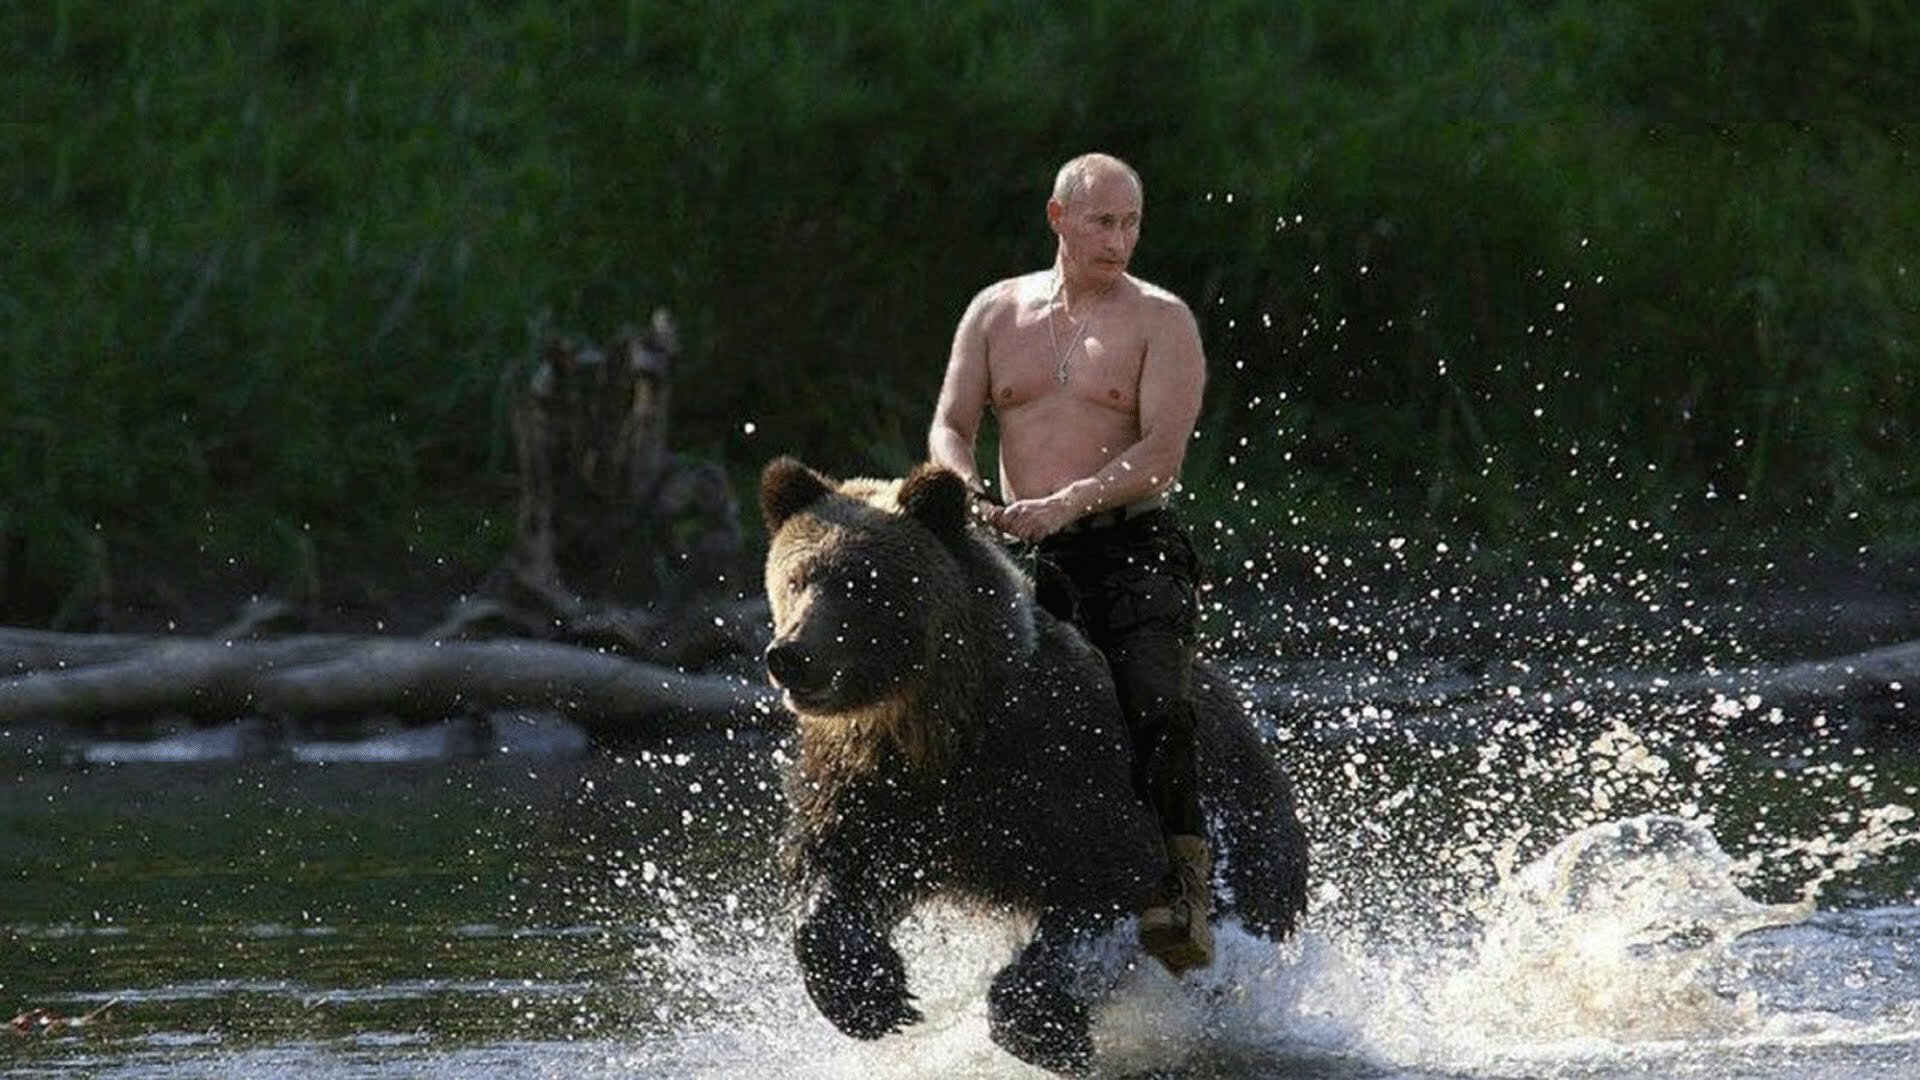 Путин оценил свое яркое фото в расслабленной обстановке на природе с хищником